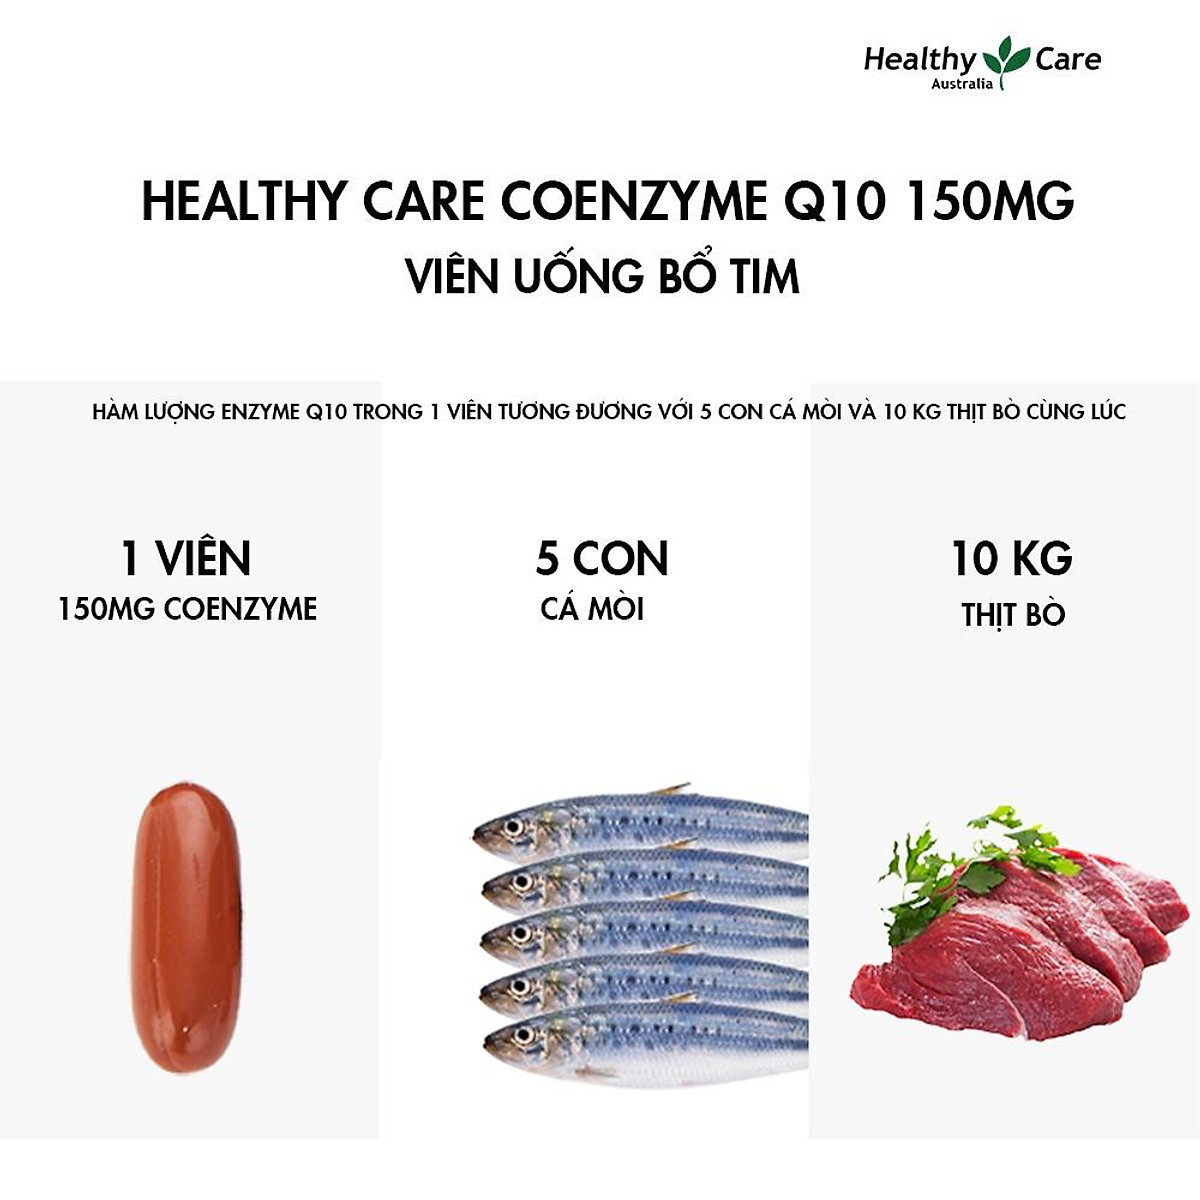 Bổ tim Úc Healthy Care CoEnzyme Q10 150mg giúp duy trì sức khỏe tim mạch, nâng cao sức khỏe chung - OZ Slim Store